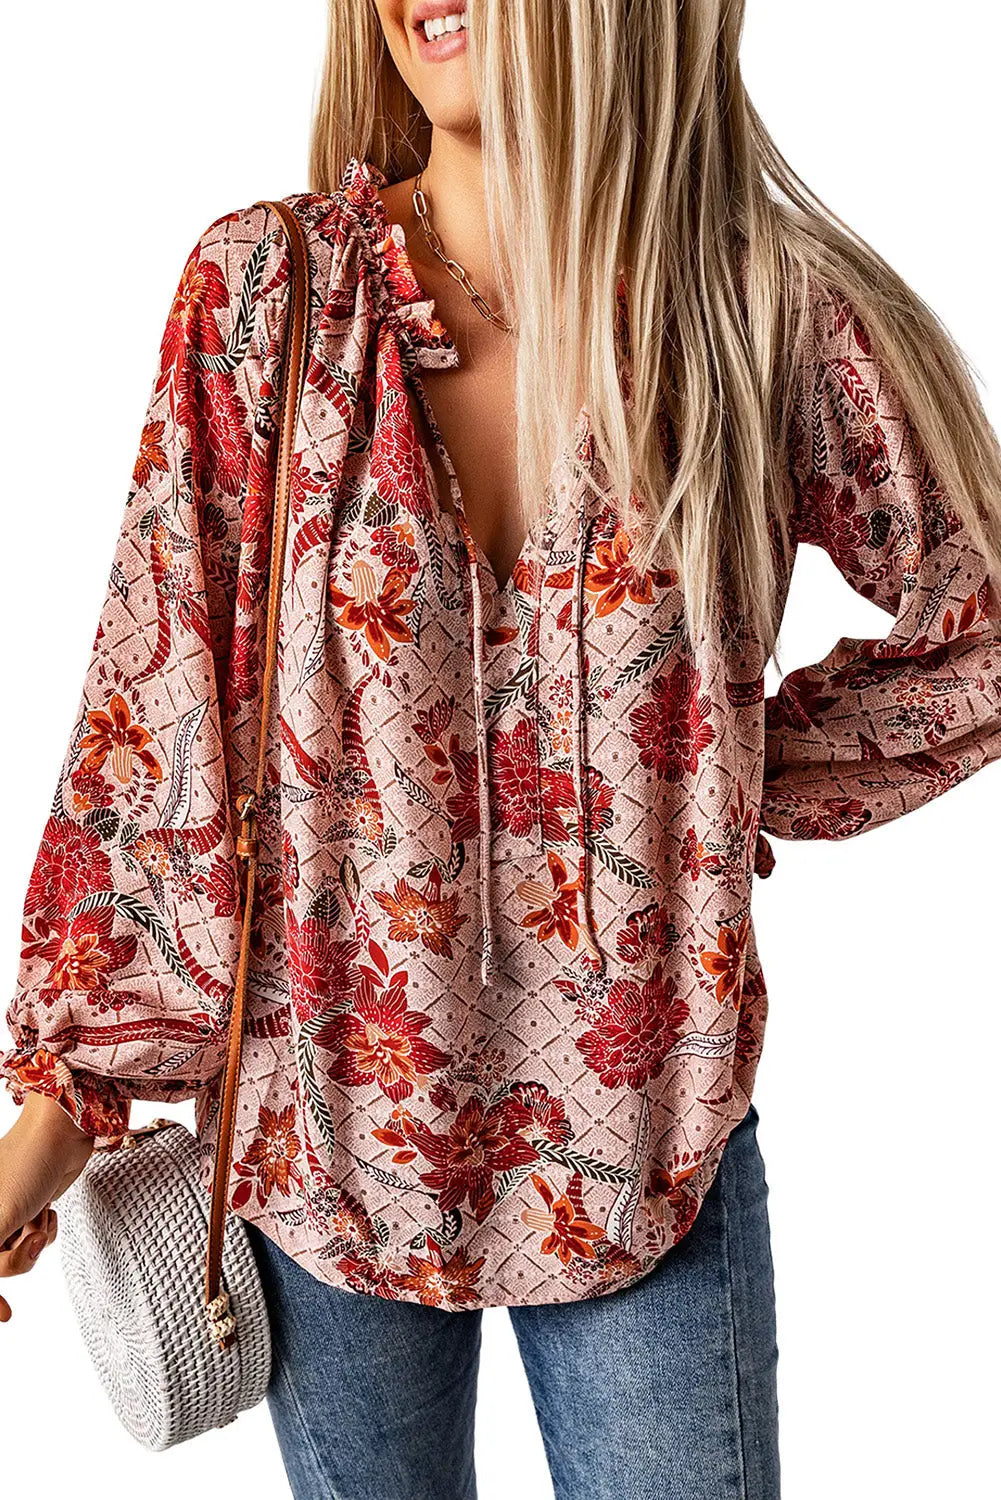 Pink split v neck printed blouse - tops